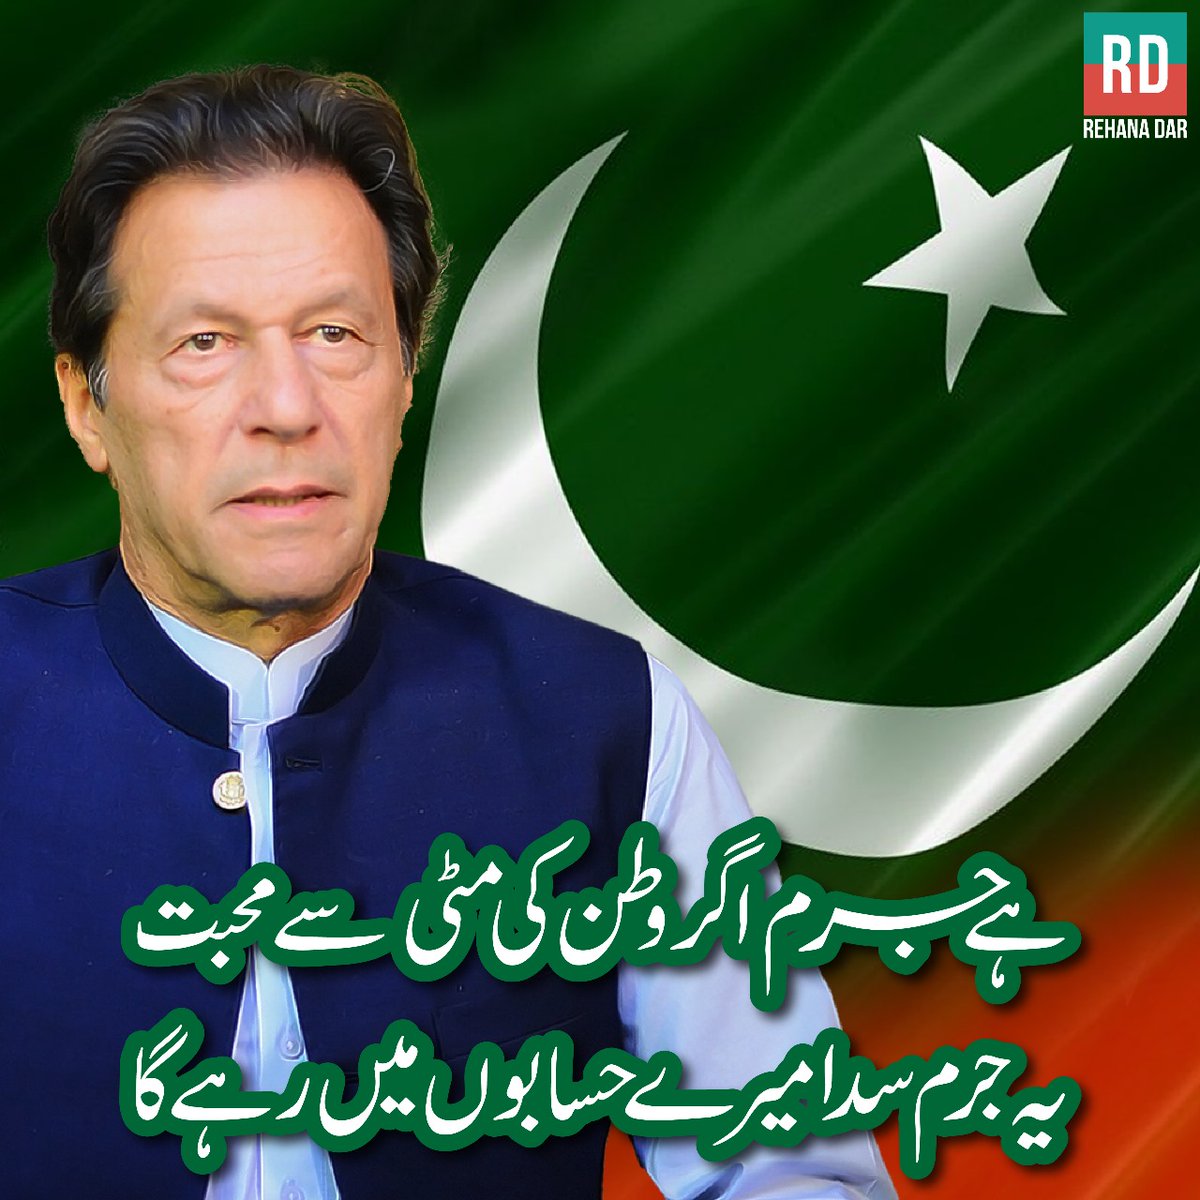 عمران خان کا جرم صرف اتنا ہے کہ اس نے وطن کی مٹی سے محبت کی، ہمیشہ آئین، قانون، خودداری اور جمہوریت کی بالادستی کی بات کی. #PakistanUnderFascism